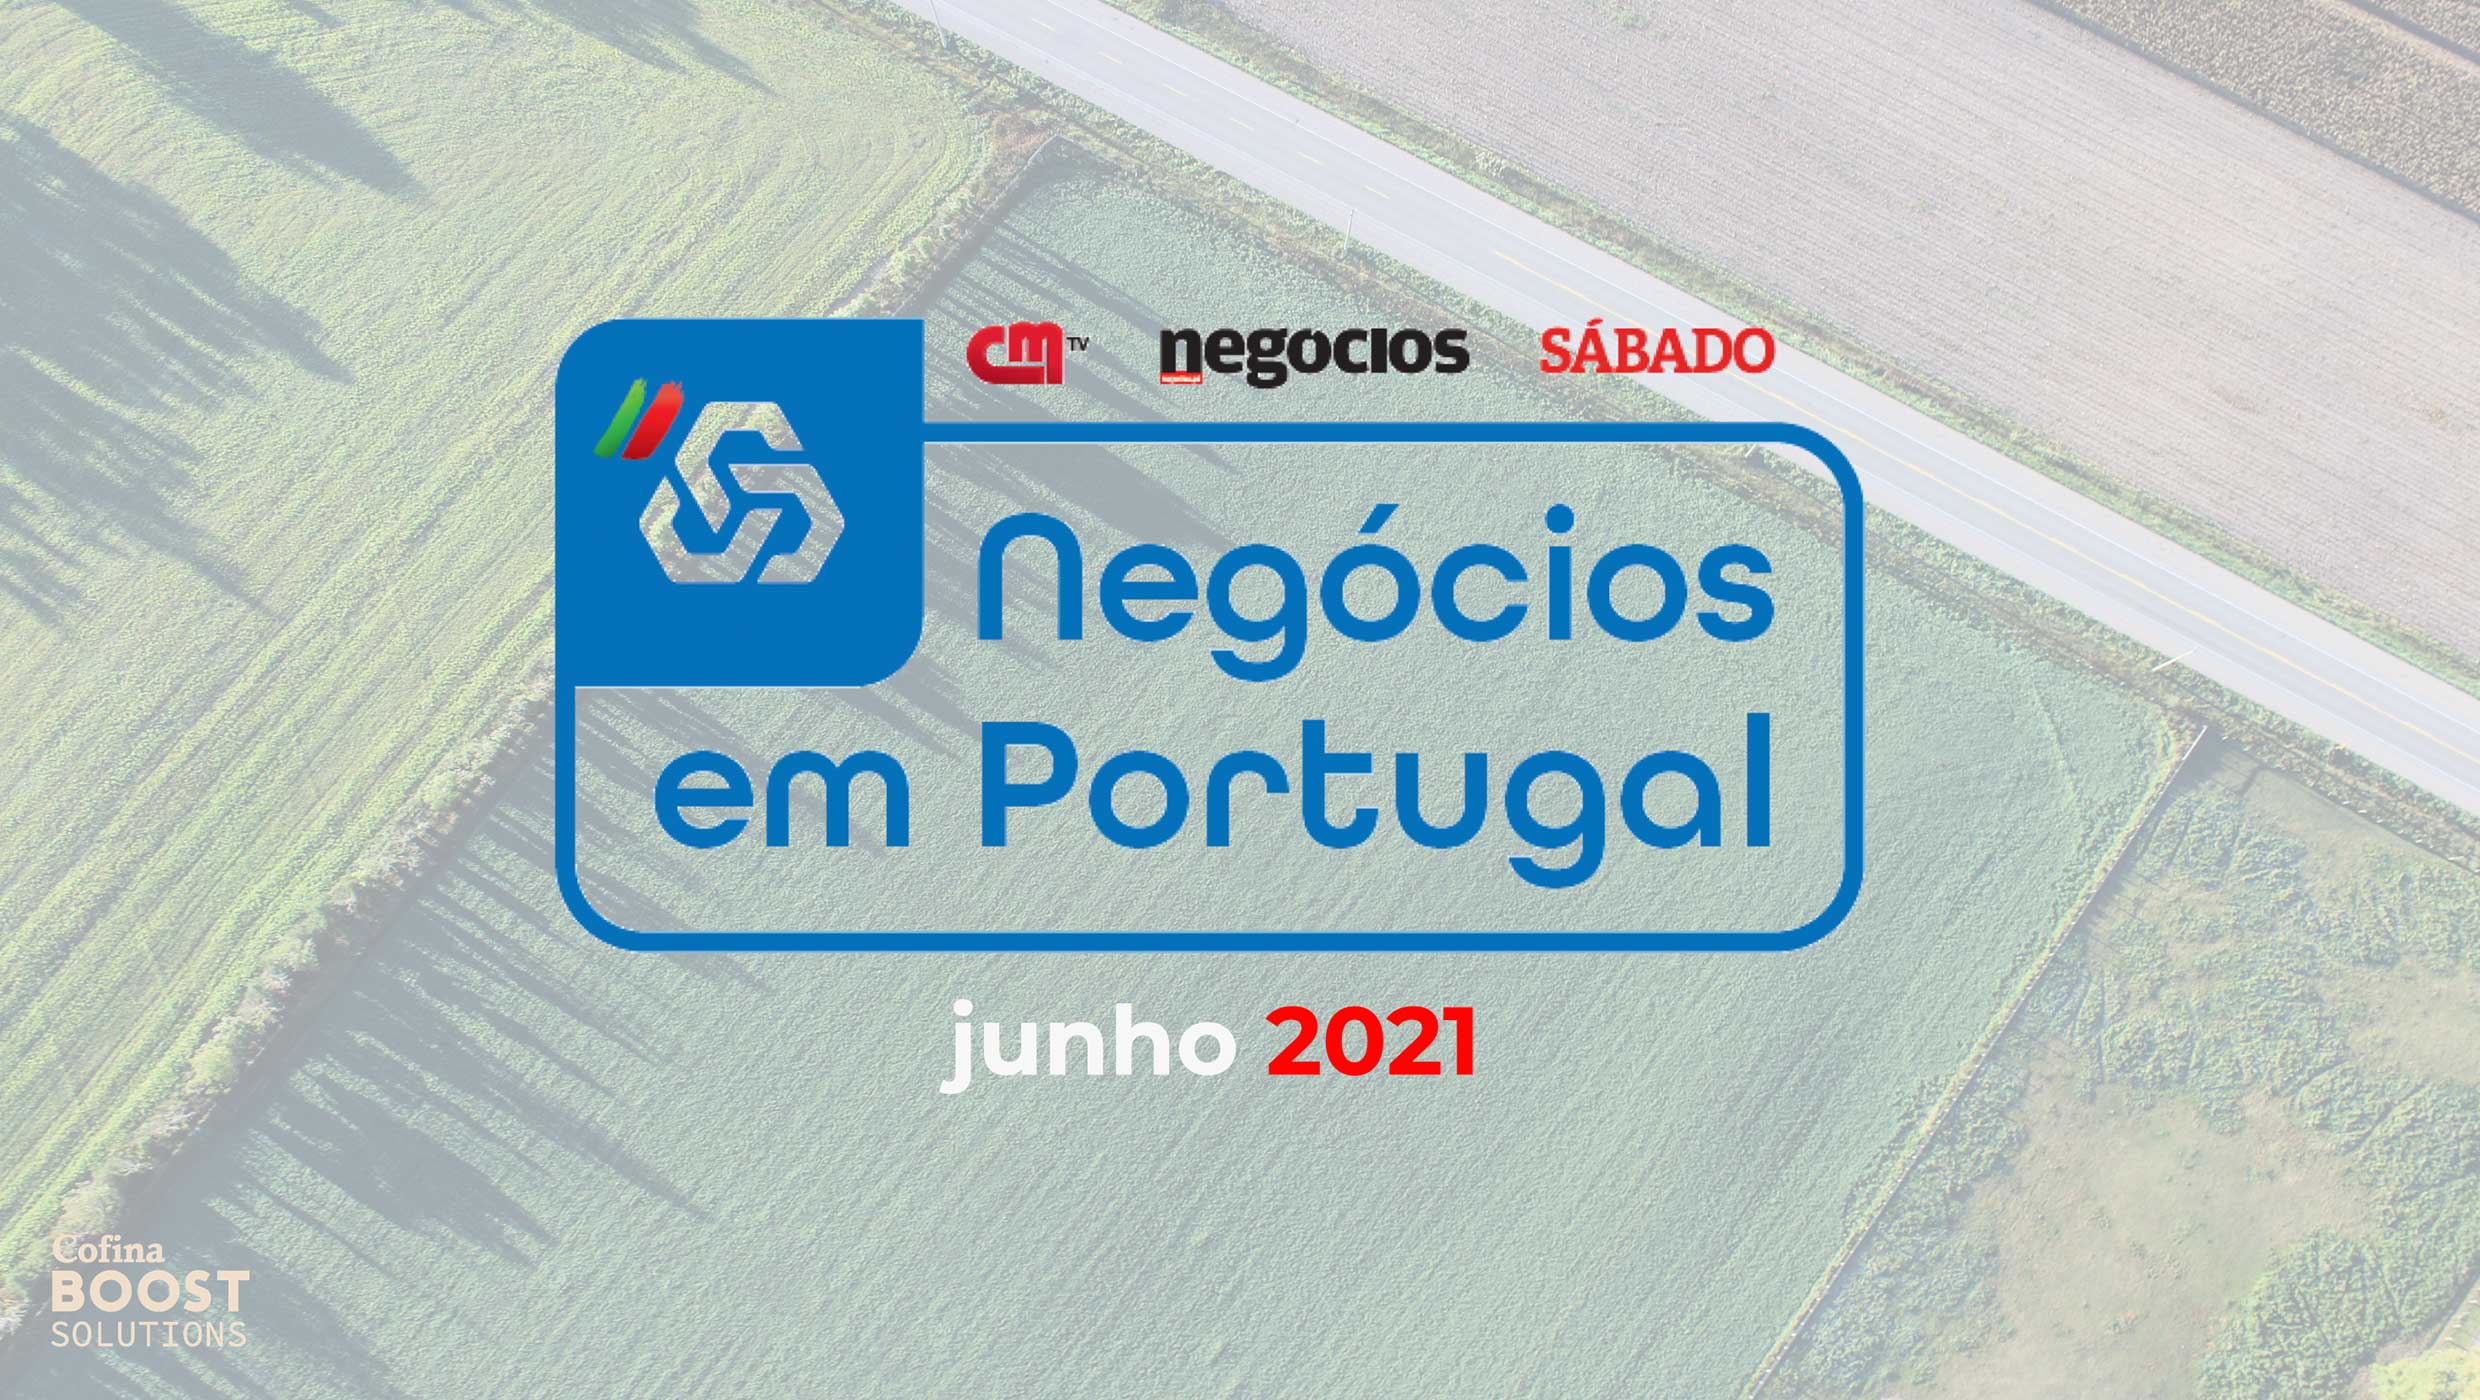 negocios-em-portugal-arranca-esta-terca-feira-na-cmtv-correio-da-manha-sabado-e-jornal-de-negocios